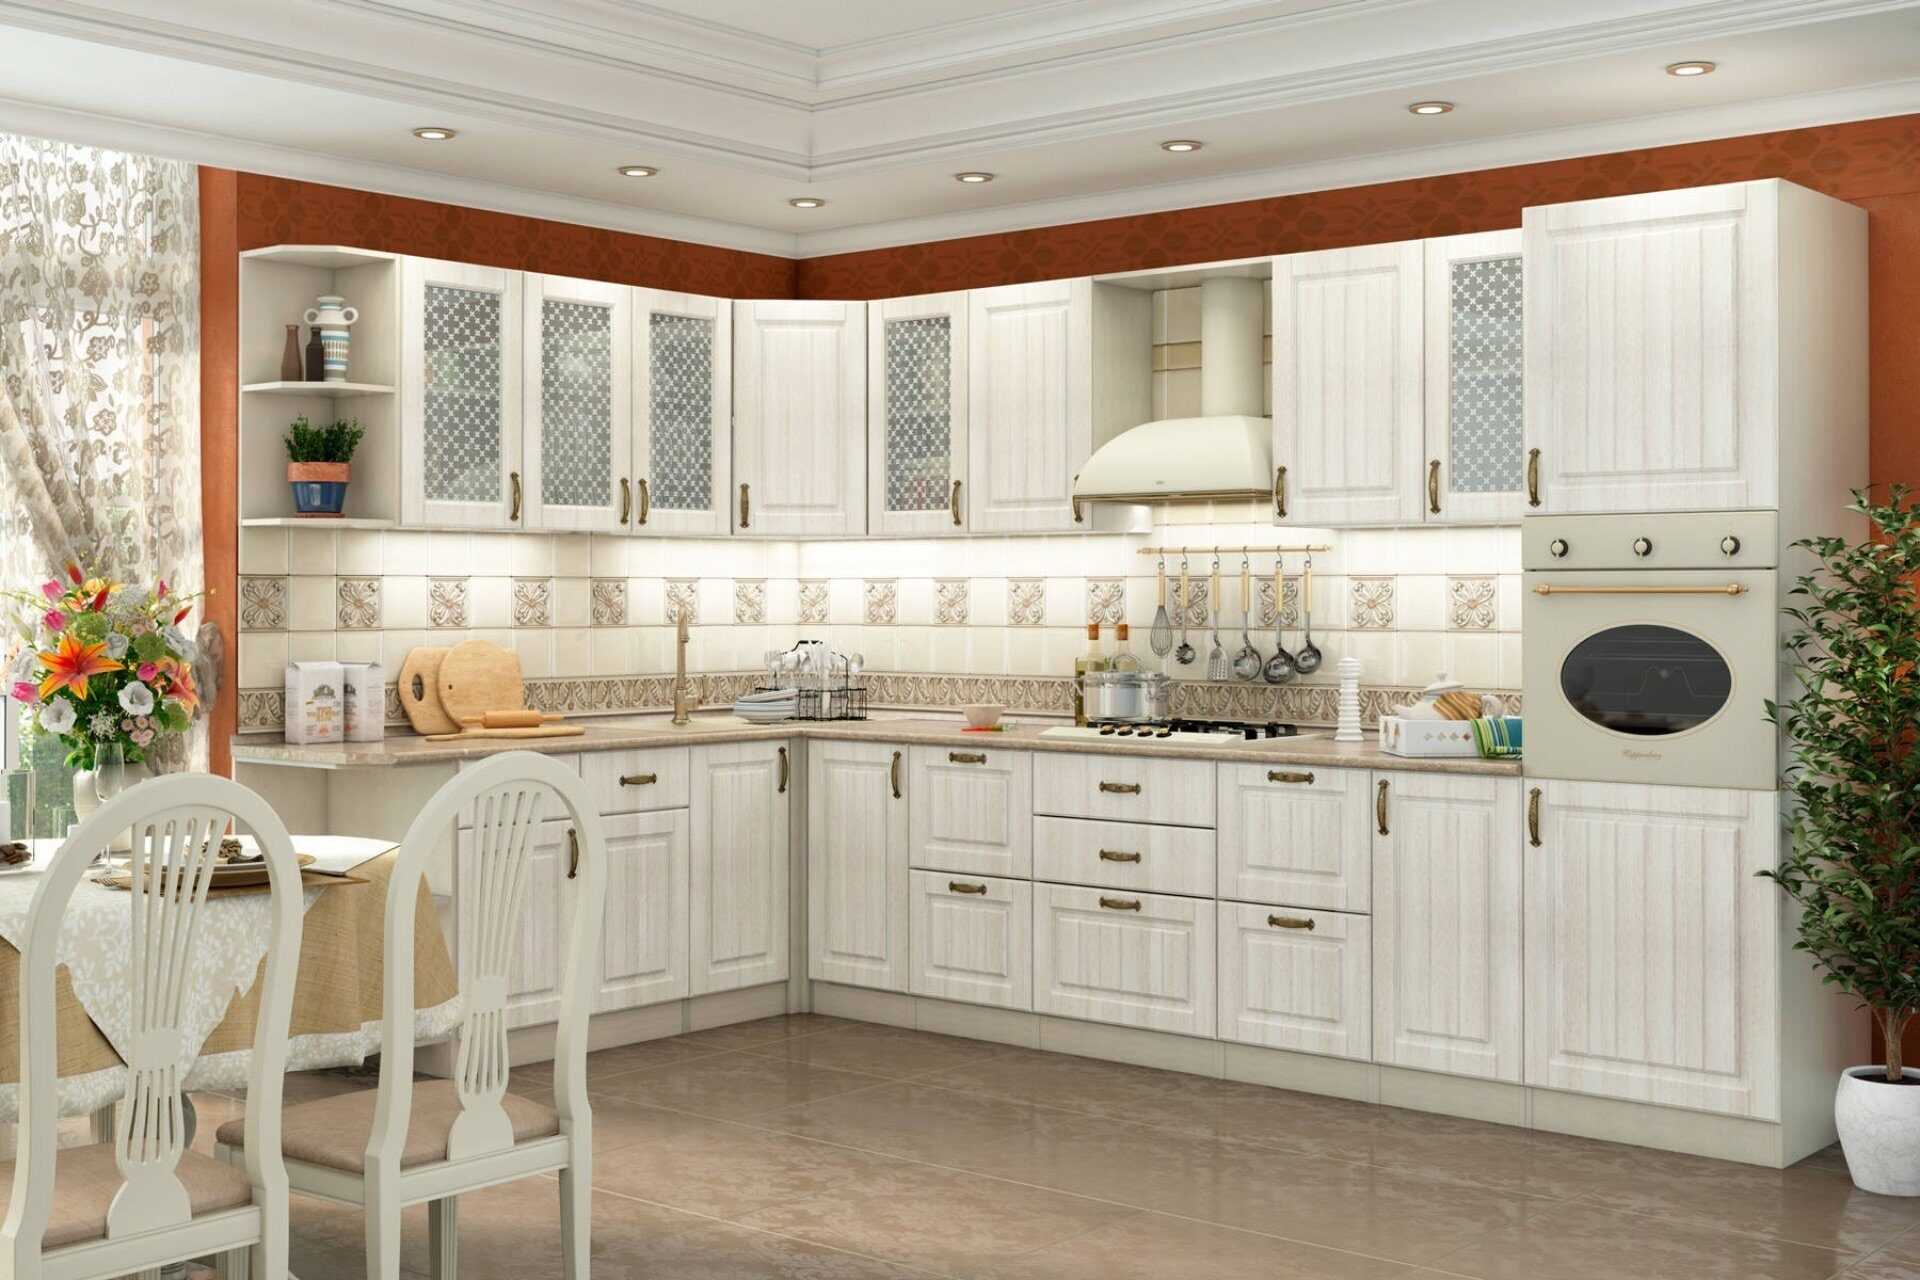 Матовые кухни - 150 фото вариантов дизайна кухни матового цвета